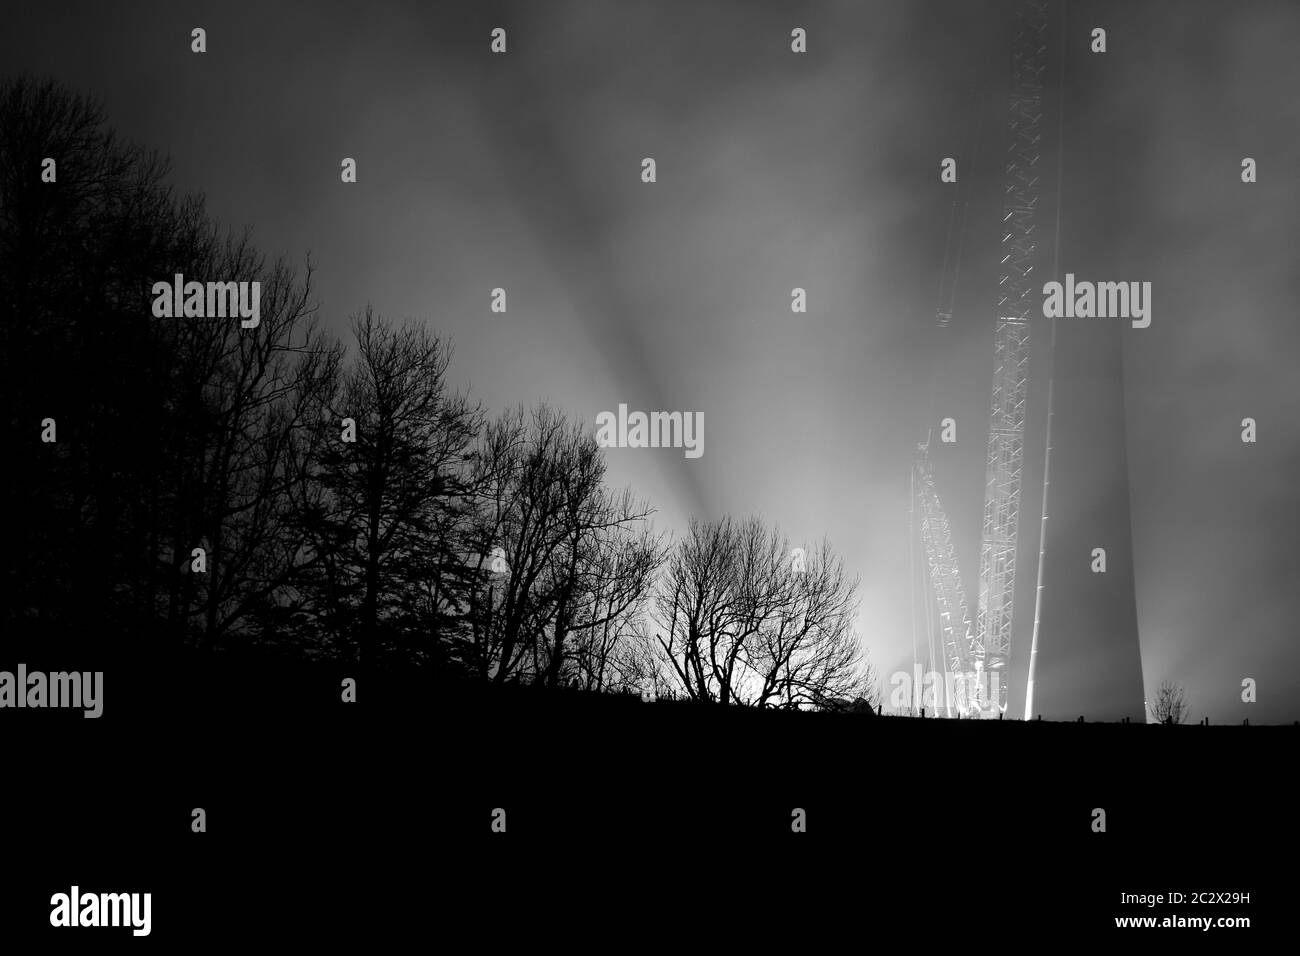 gruppo turbina eolica, illuminato di notte Foto Stock